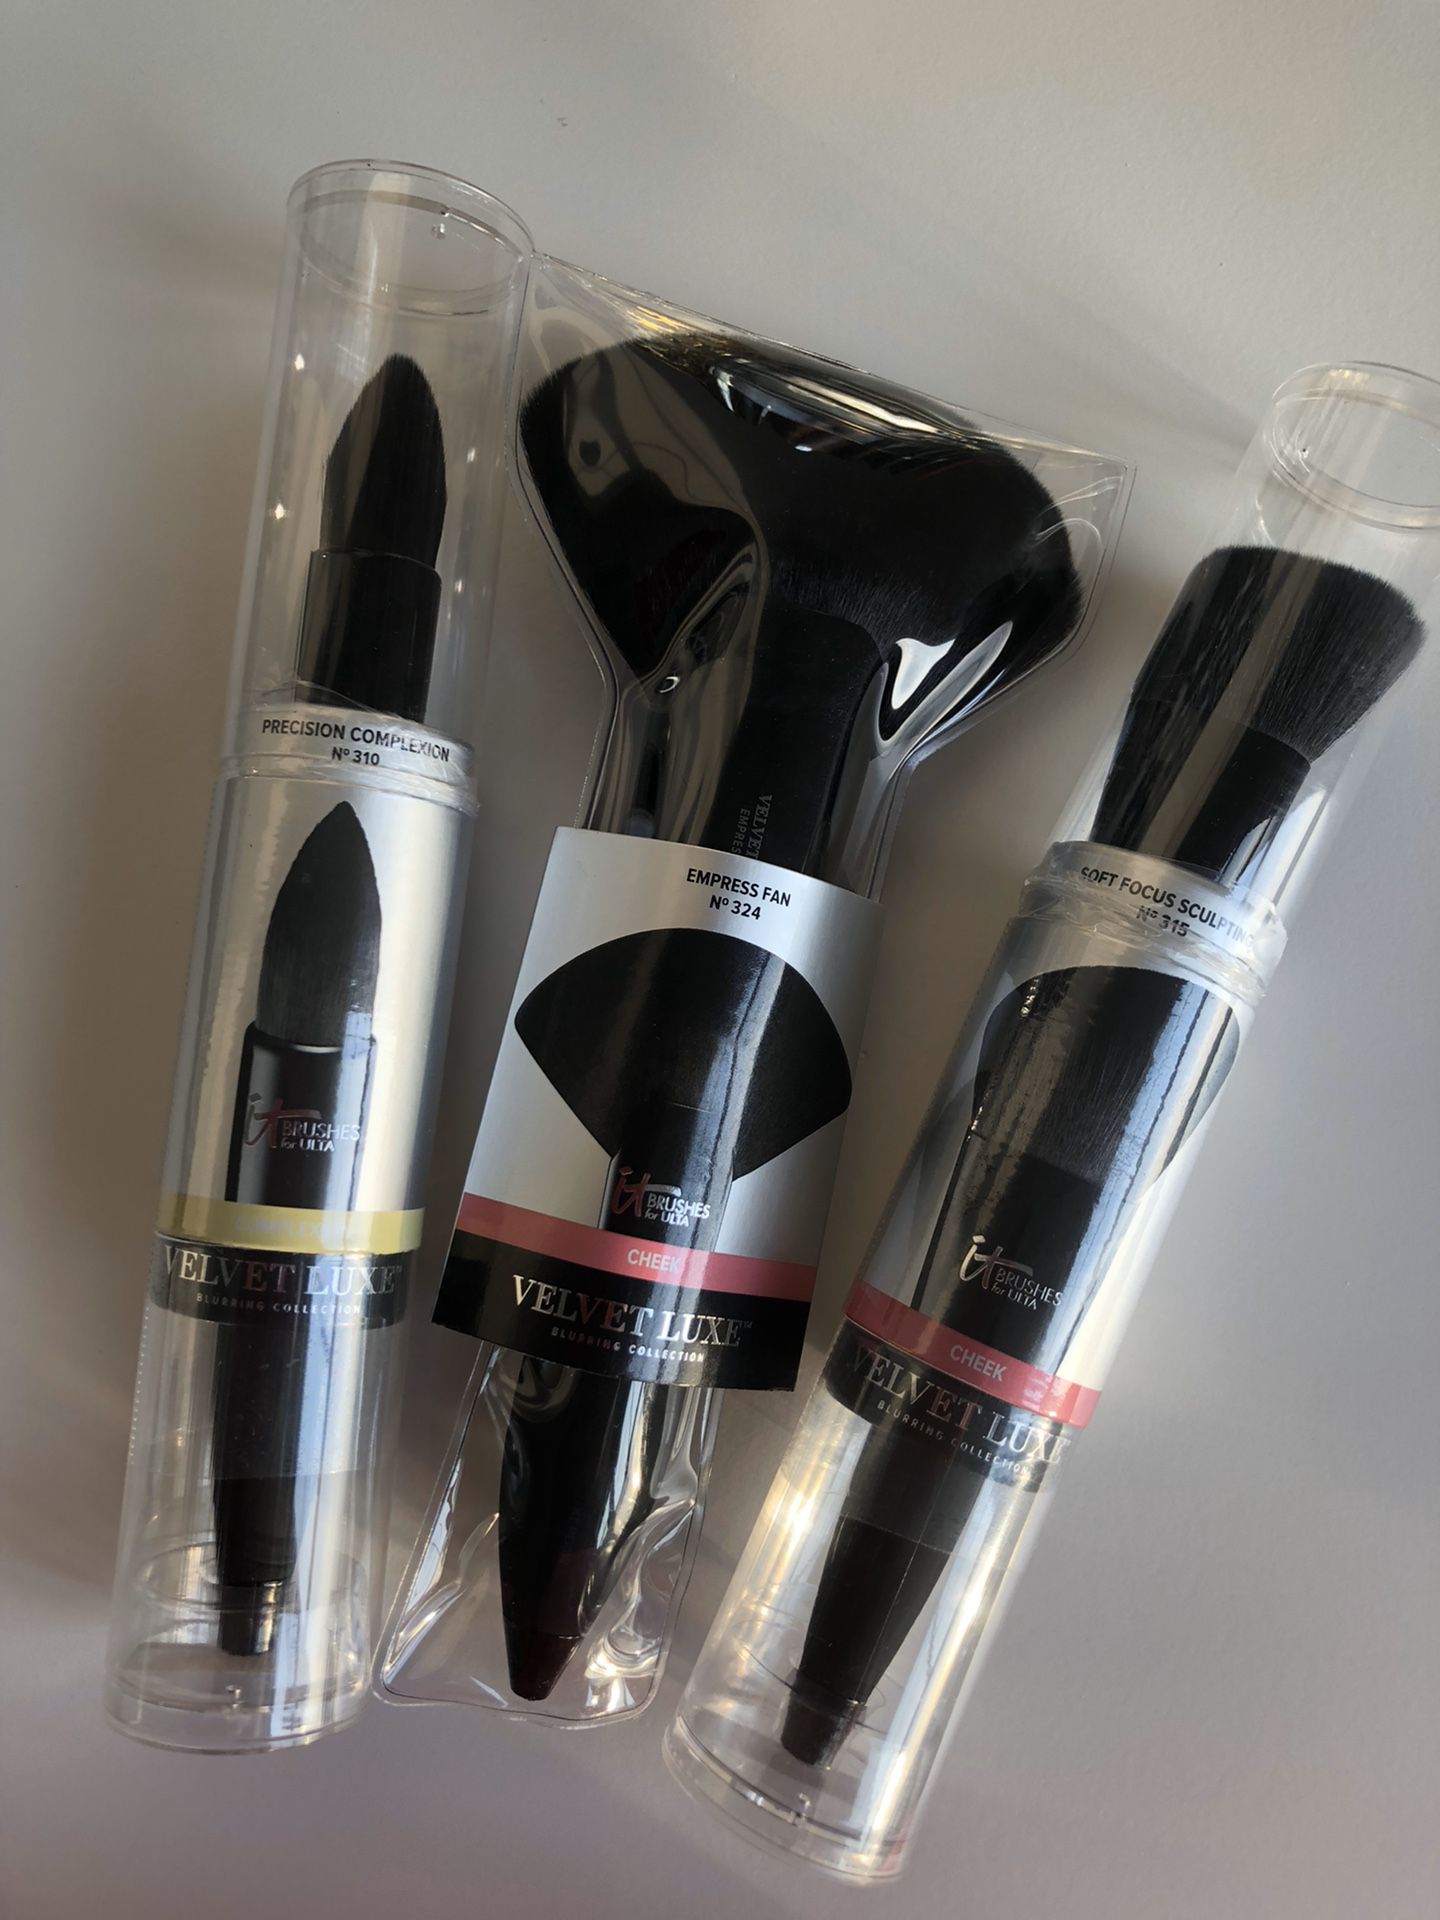 Velvet Luxe Deluxe Makeup Brushes $100